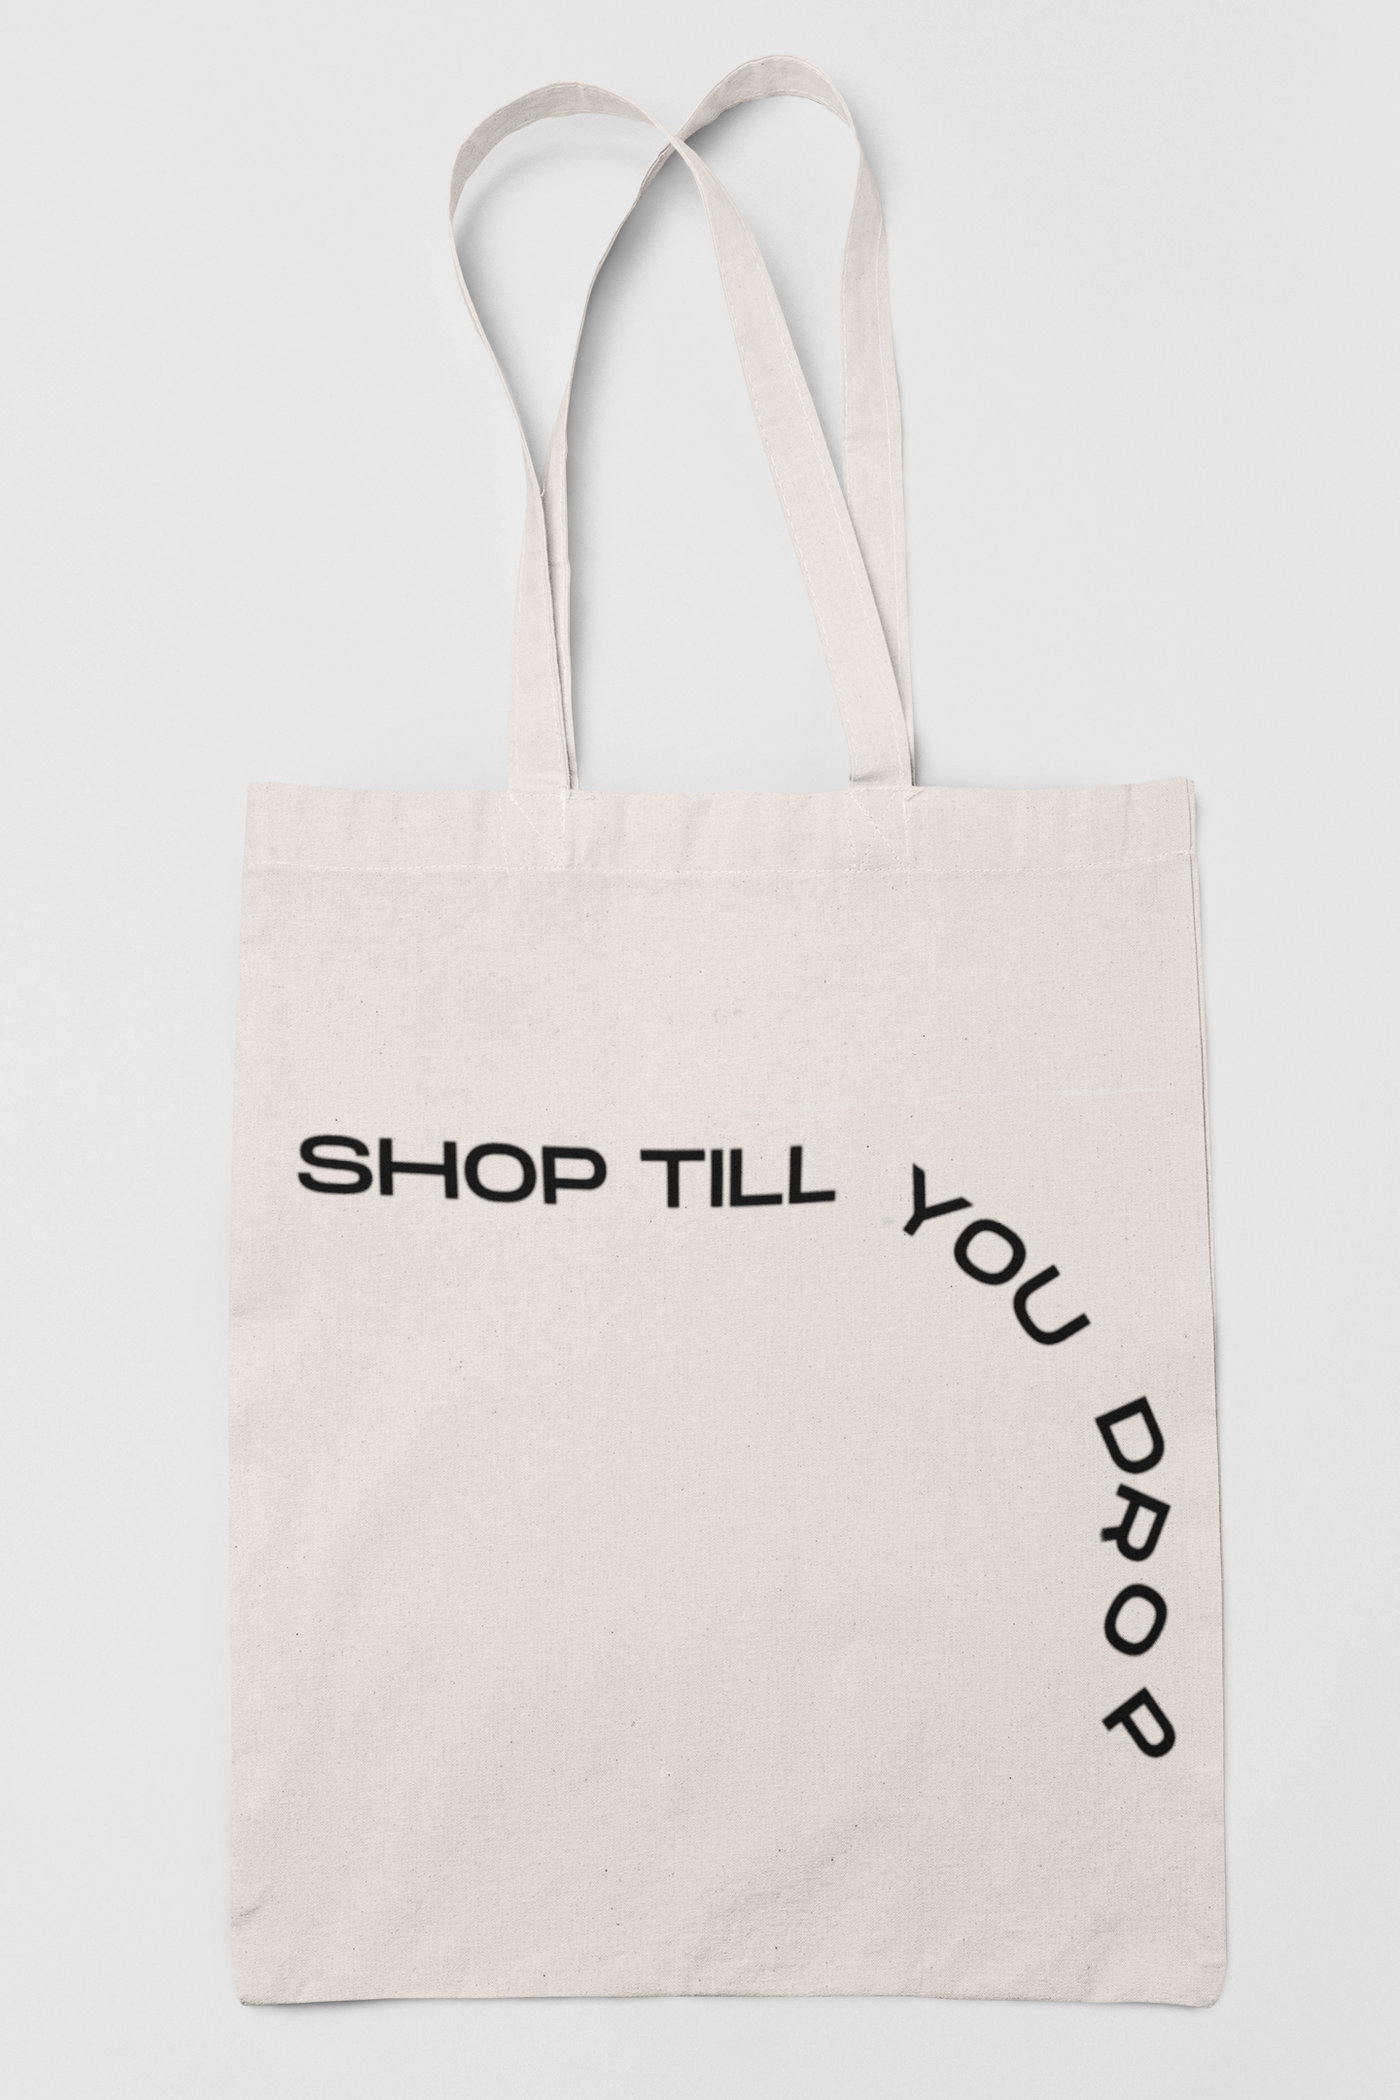 Shop Till You Drop Tote Bag 38cm x 42cm